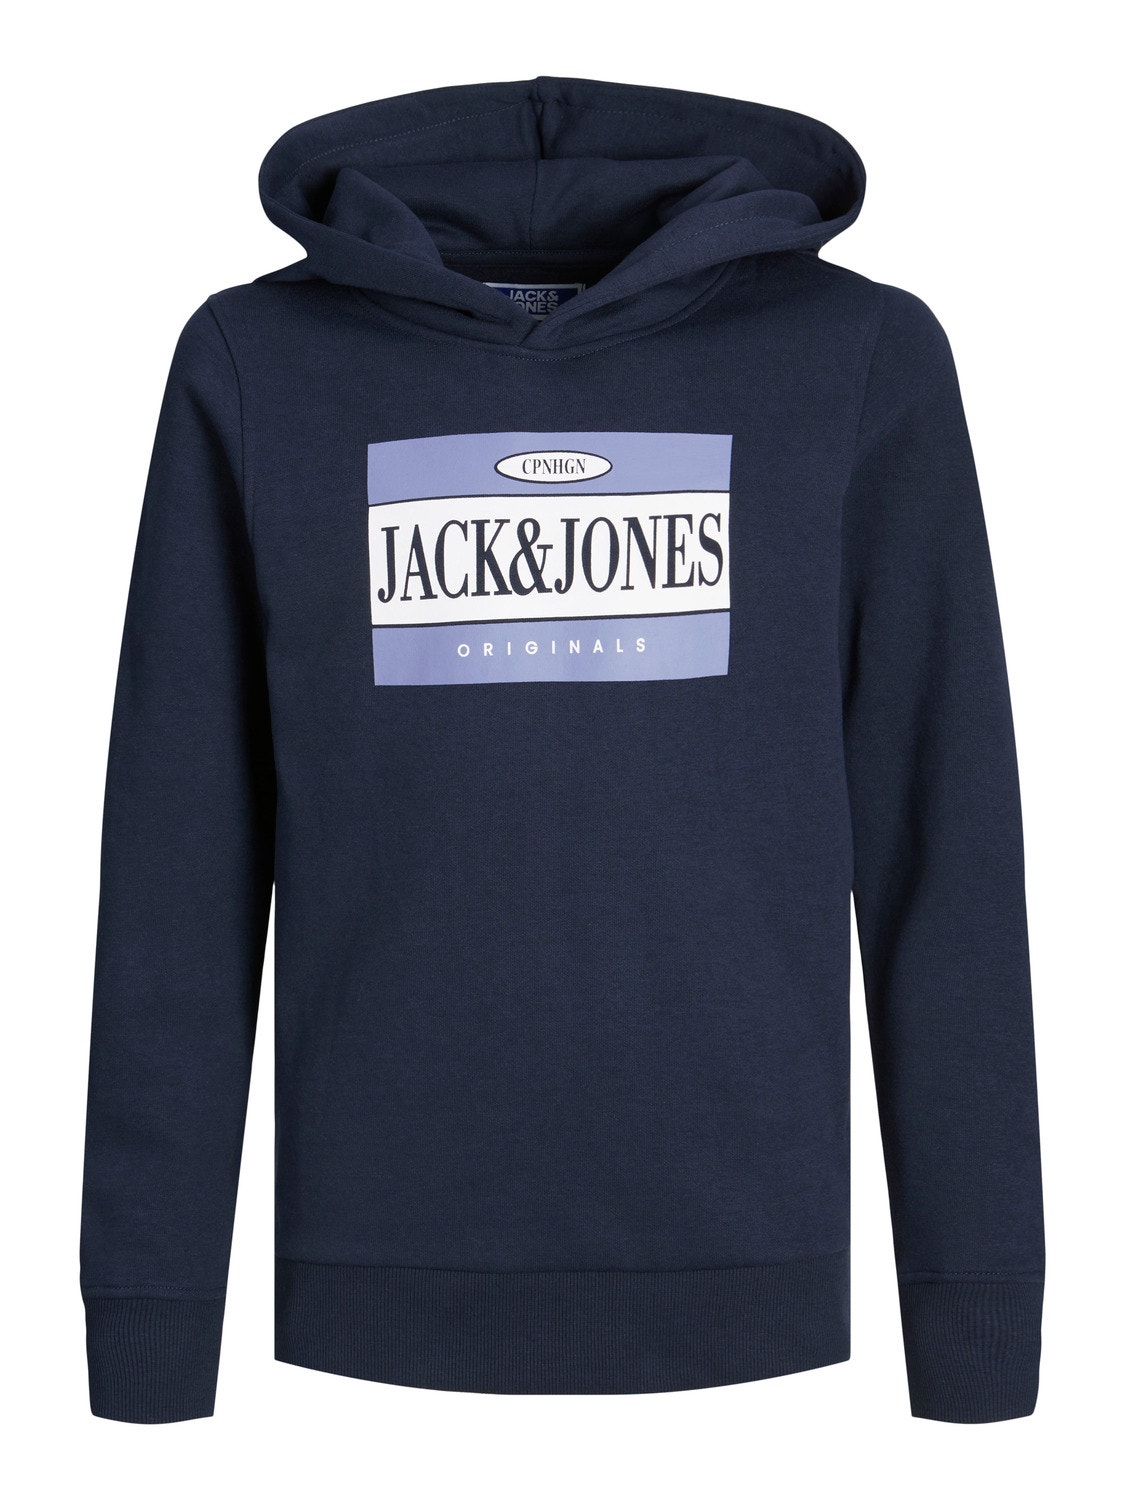 Jack & Jones Z logo Bluza z kapturem Dla chłopców -Navy Blazer - 12242465